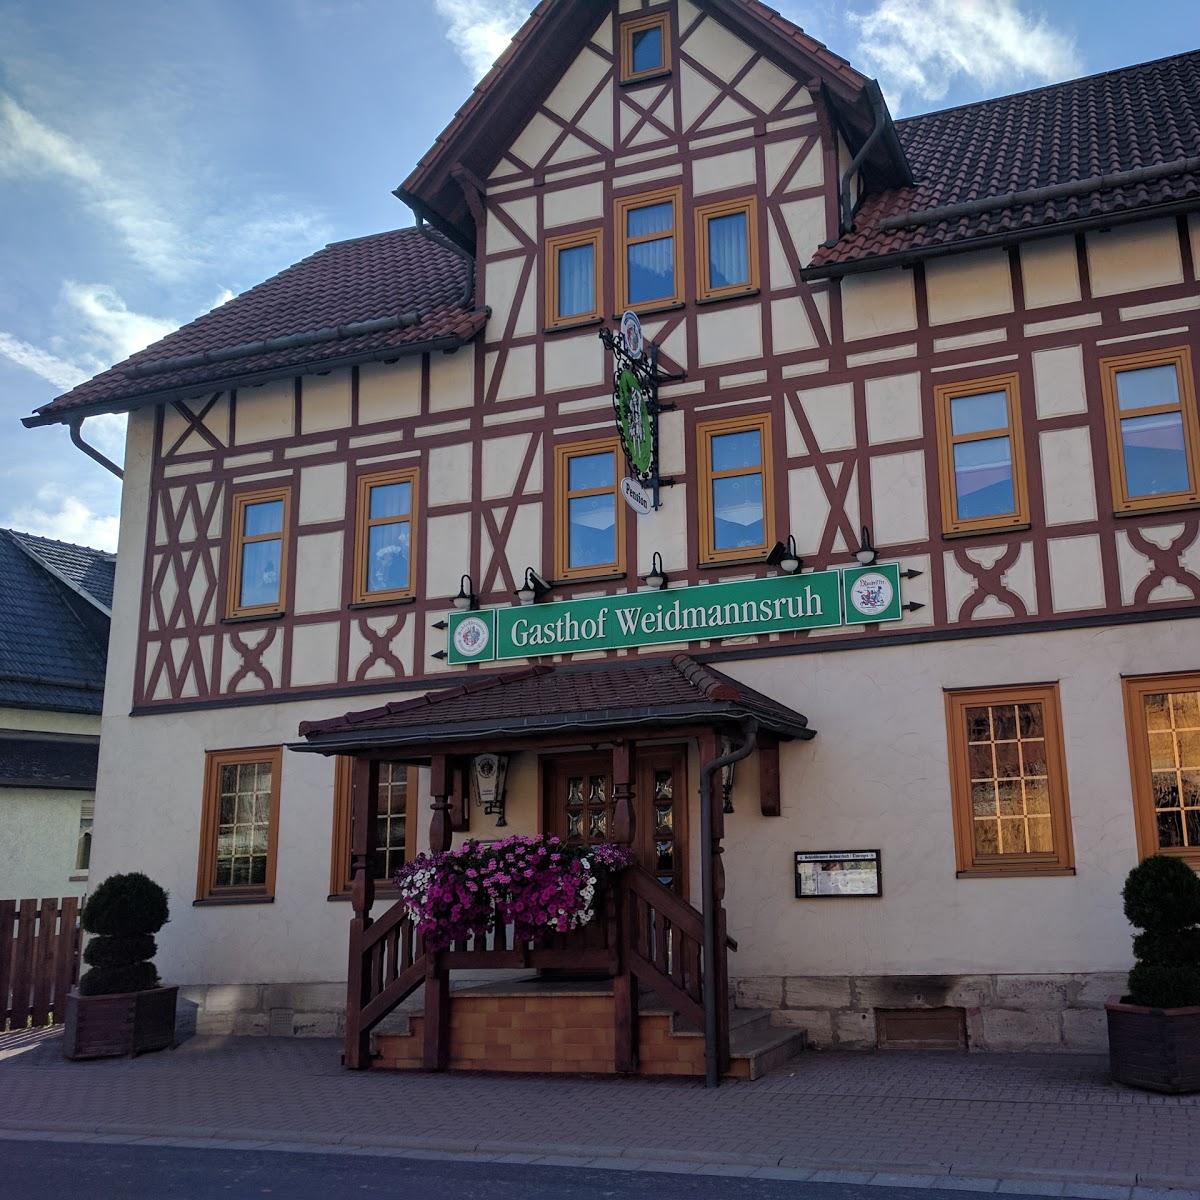 Restaurant "Gasthof Weidmannsruh" in  Schleusingen